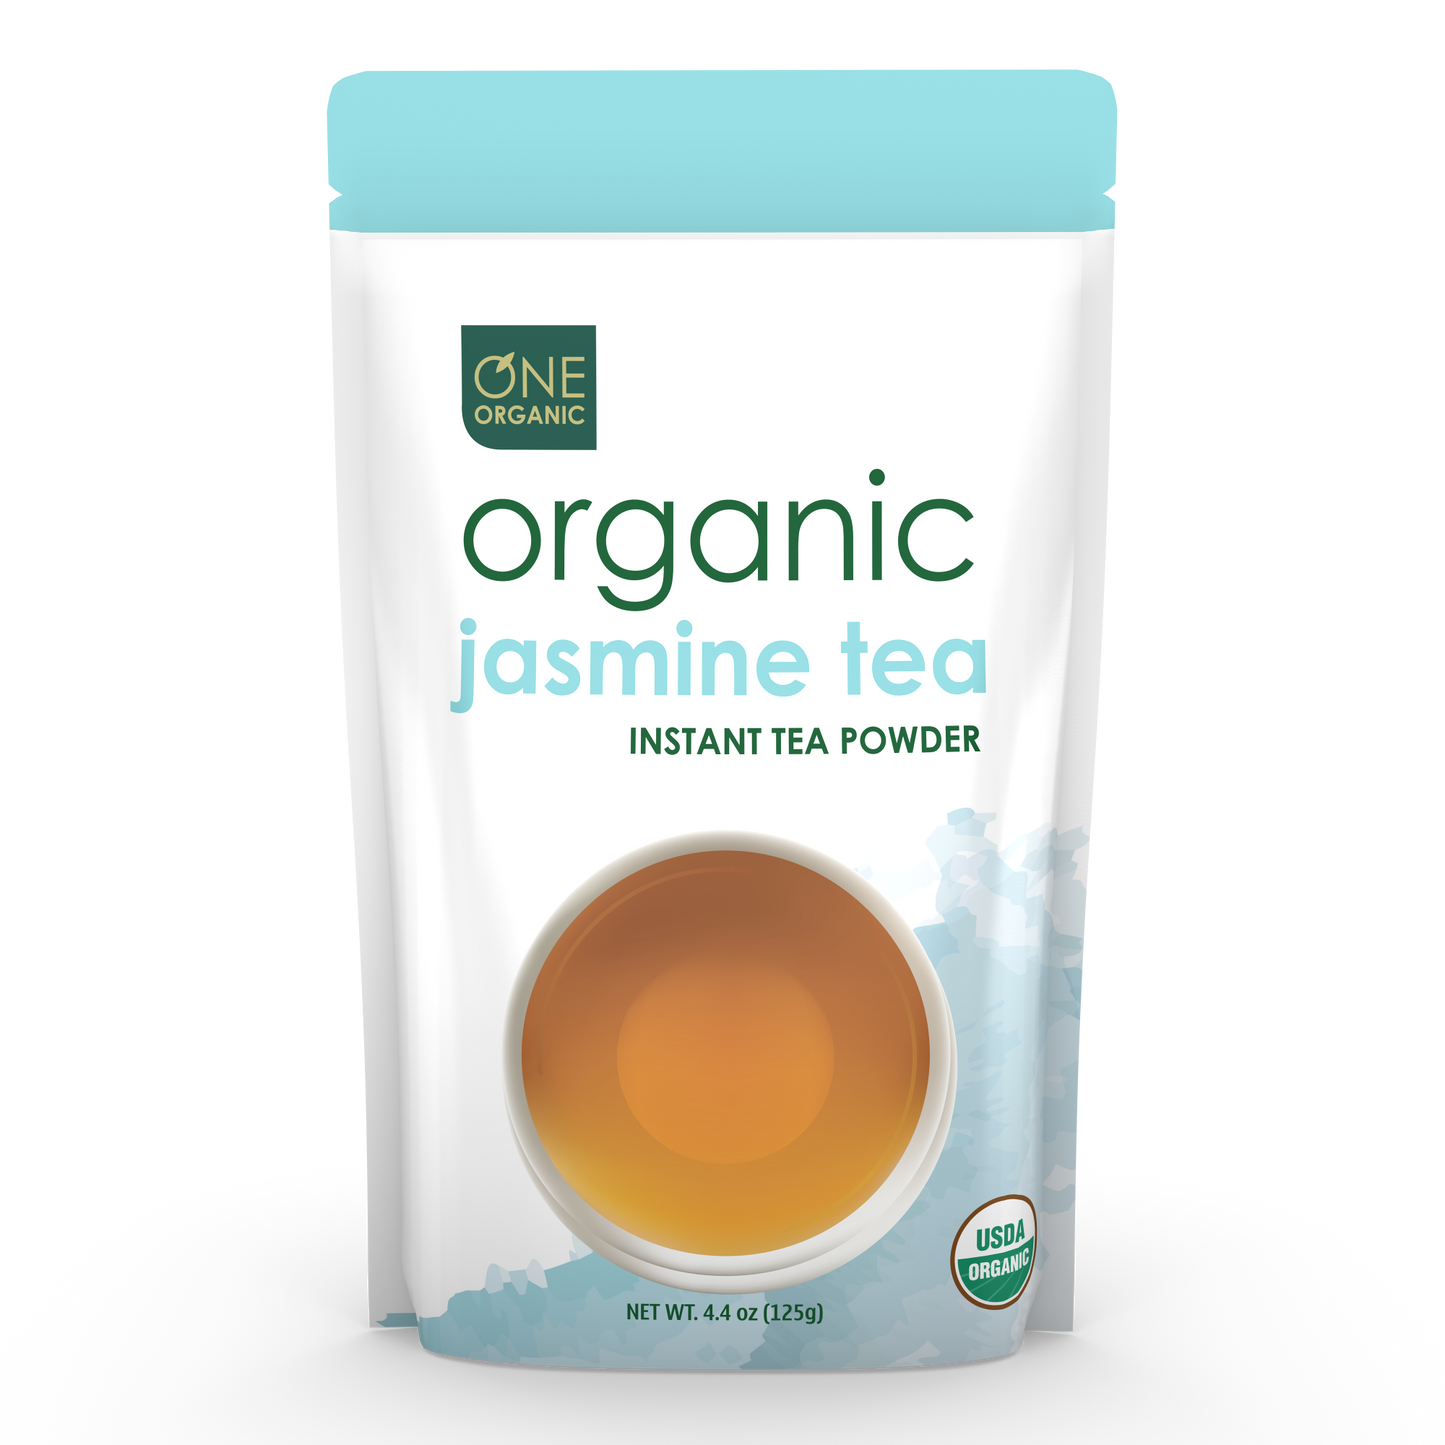 ONE ORGANIC Jasmine Instant Tea Powder 4.4 oz (125g)